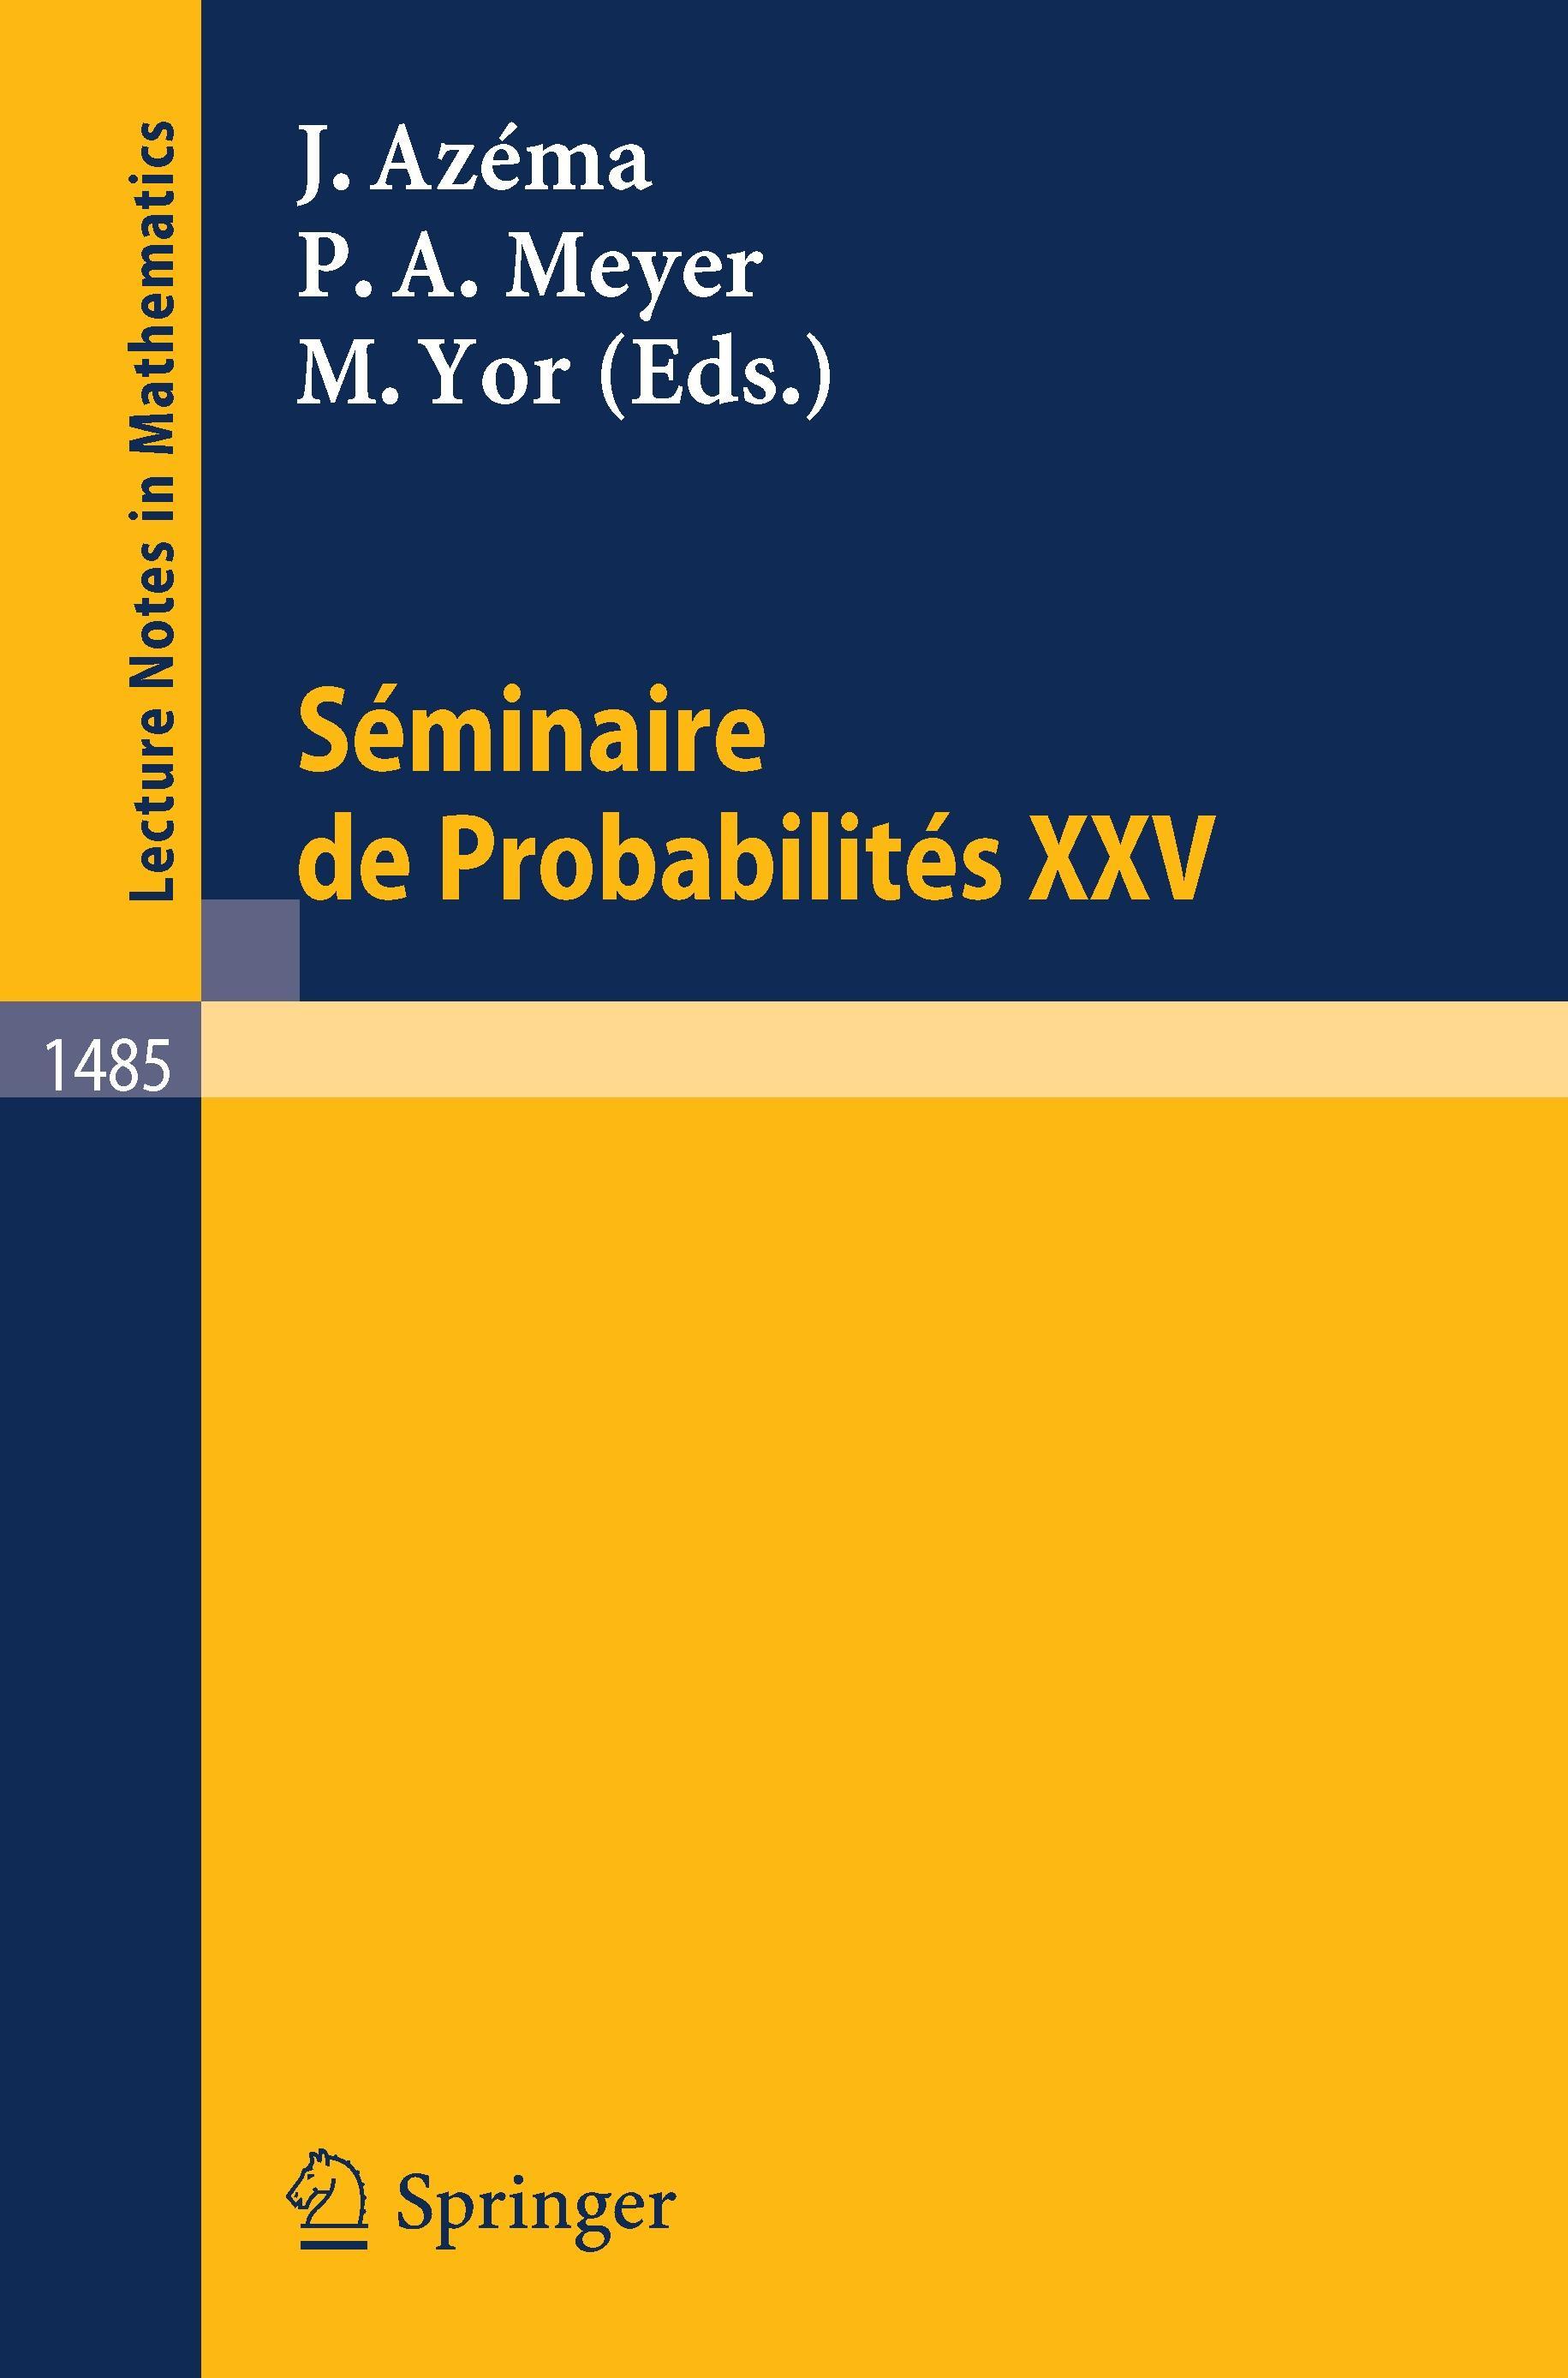 Seminaire de Probabilites XXV - Azema, Jacques|Meyer, Paul A.|Yor, Marc